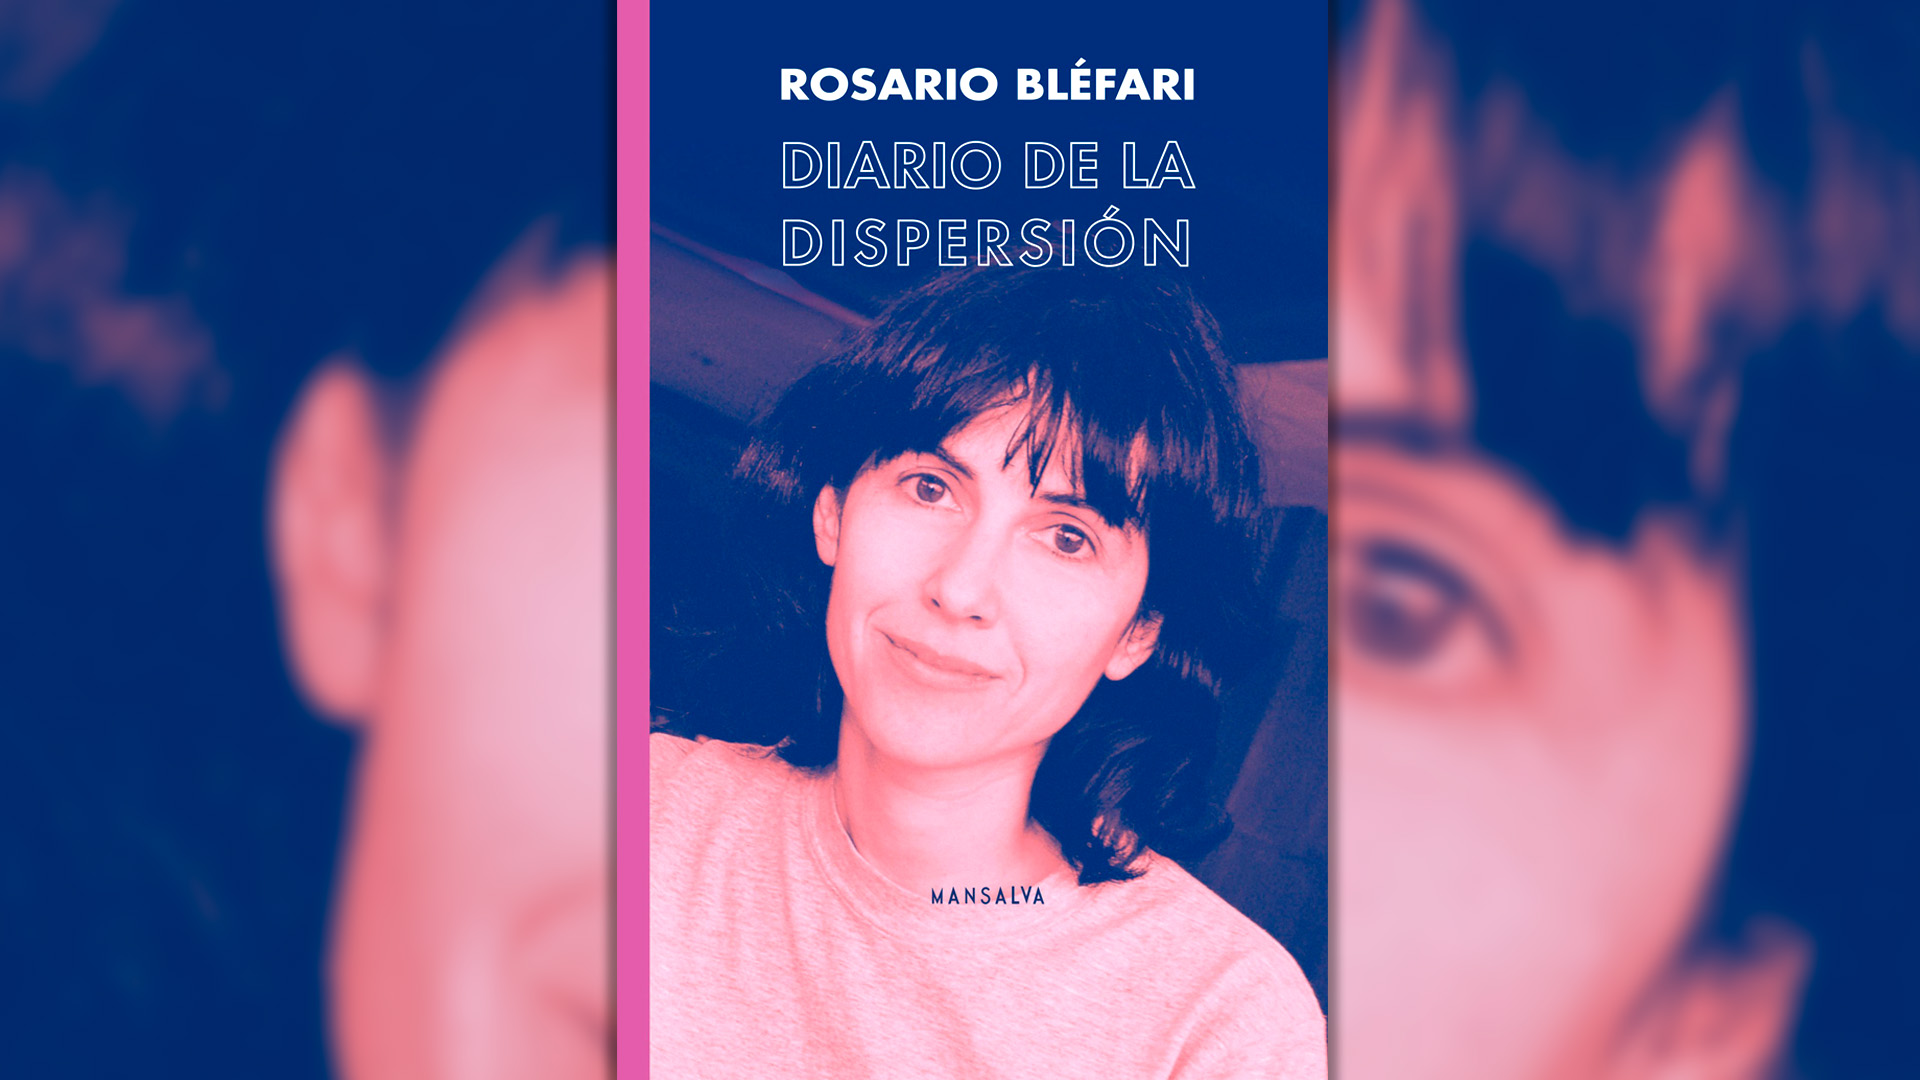 Cover of "Diario de dispersión" by Rosario Bléfari, edited by Mansalva. 